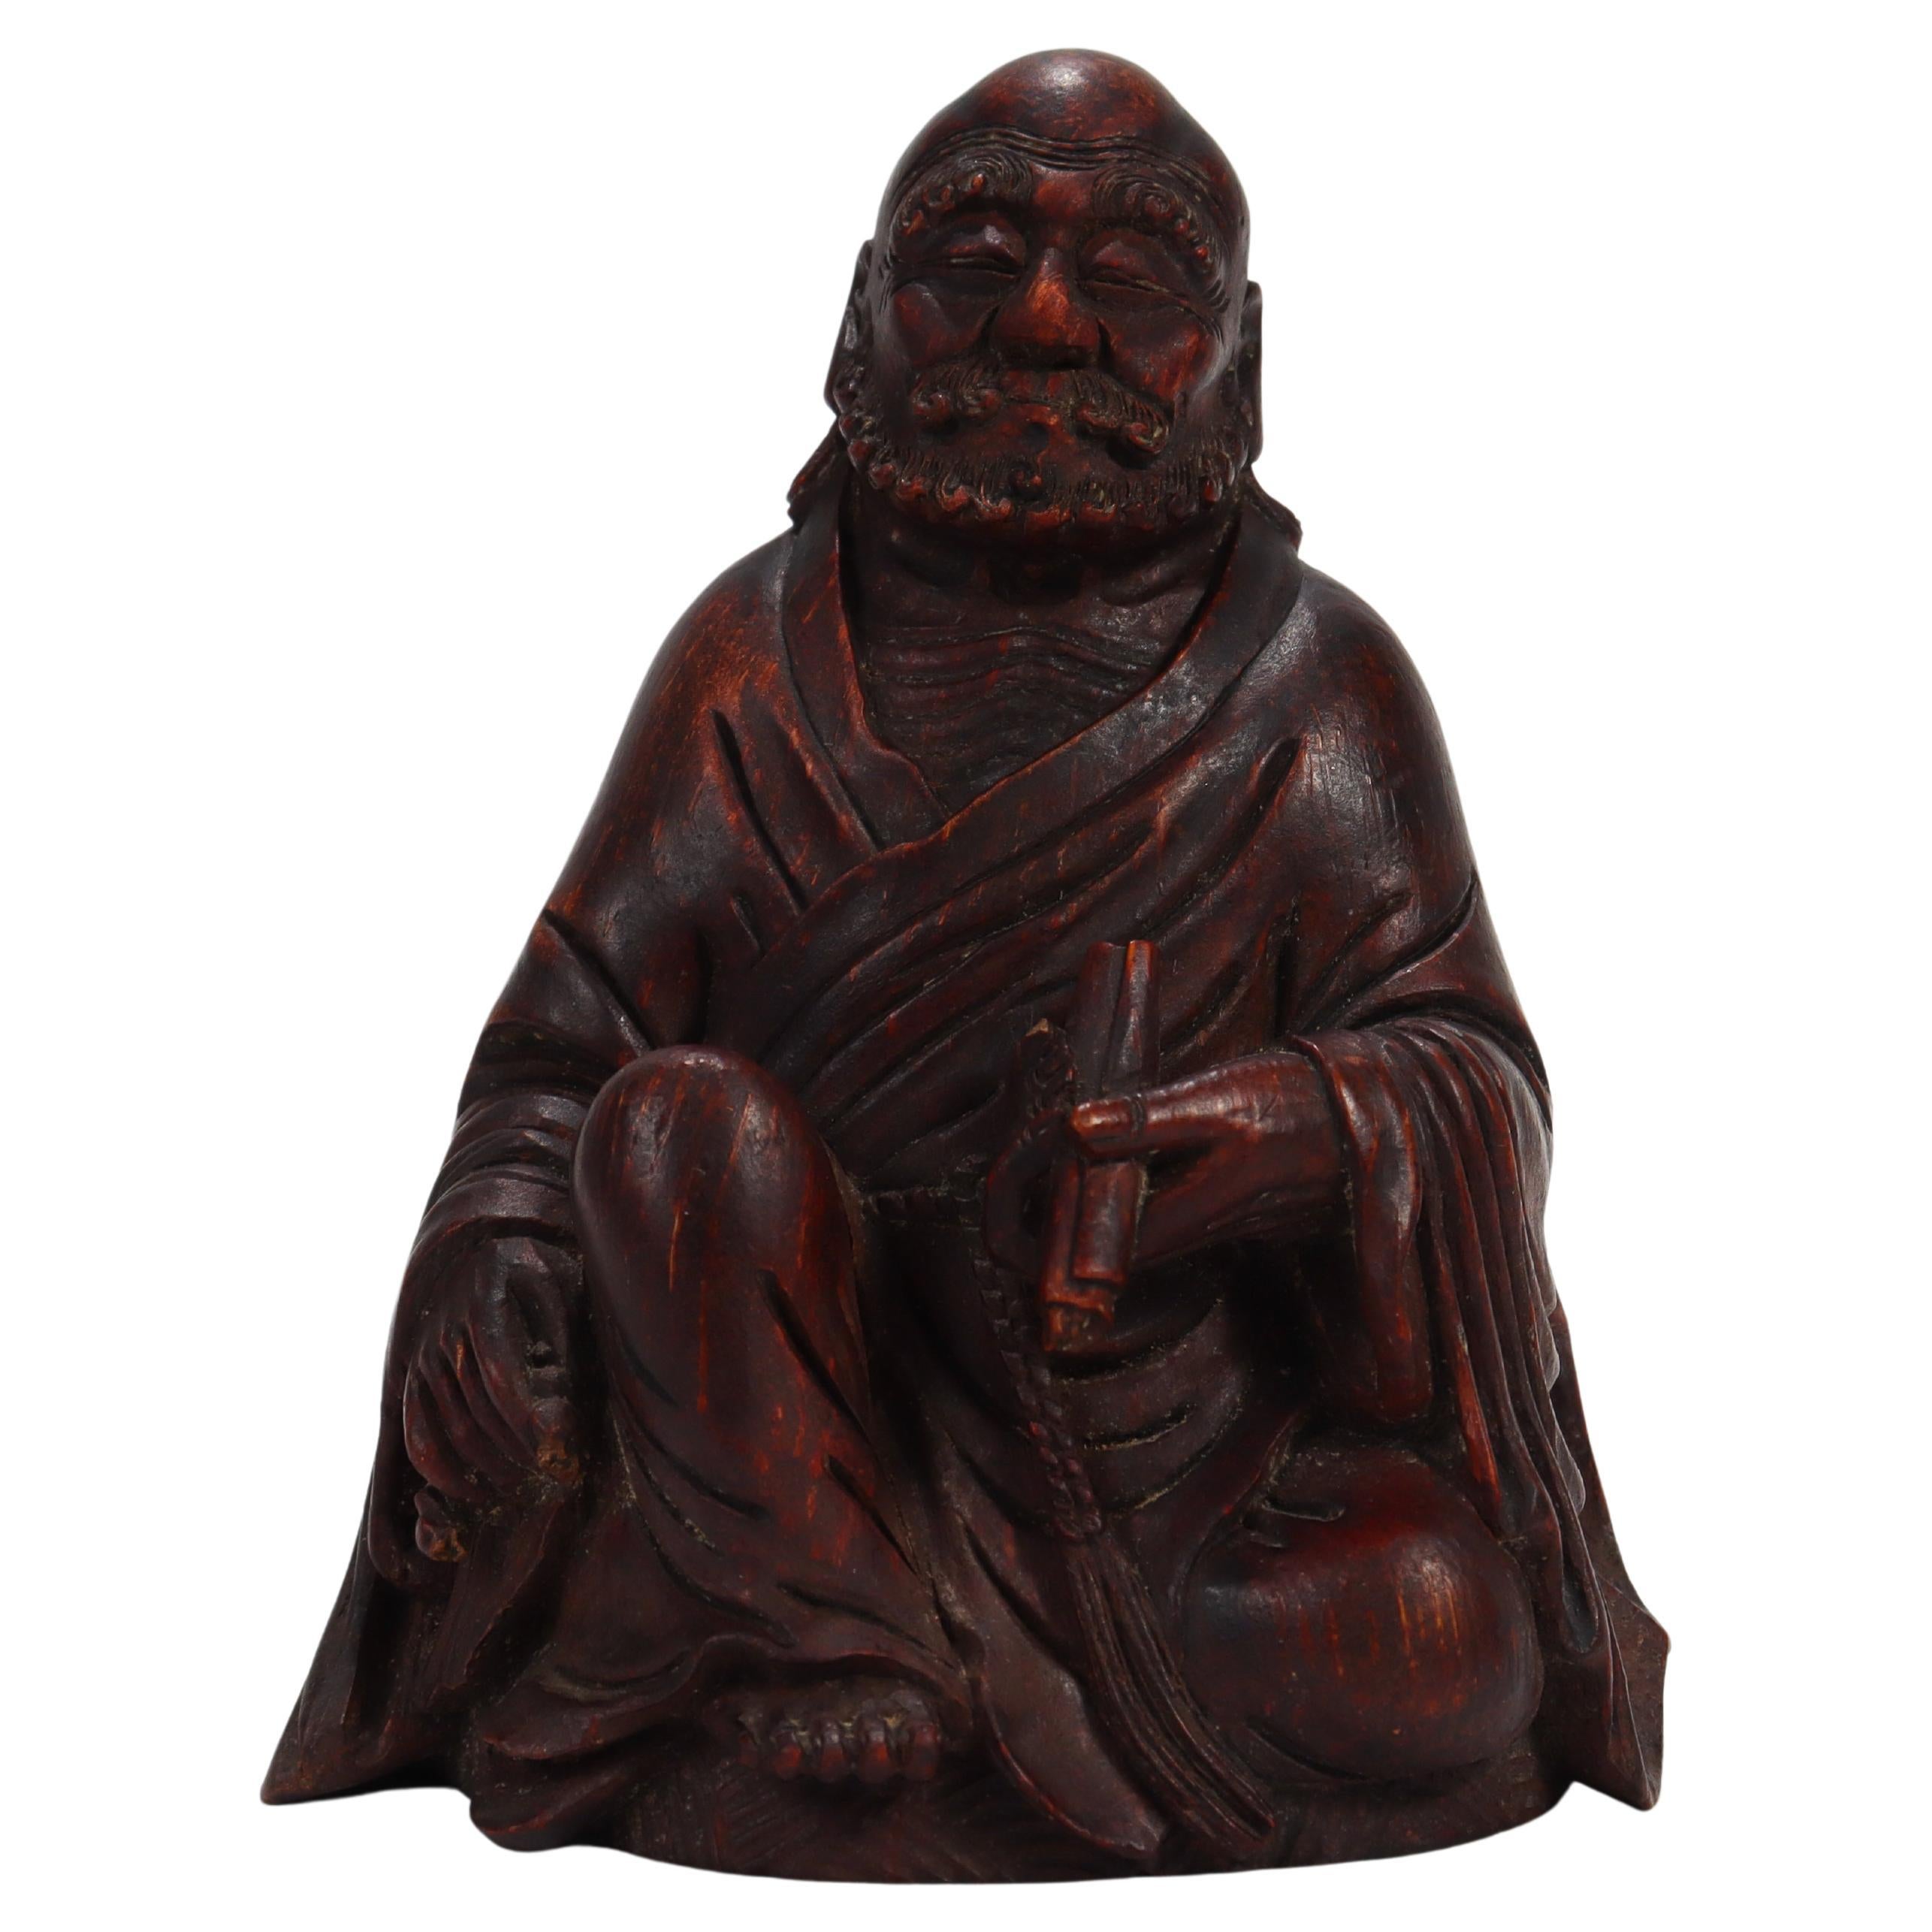 Alte oder antike japanische Holzfigur eines buddhistischen Monken aus Holz